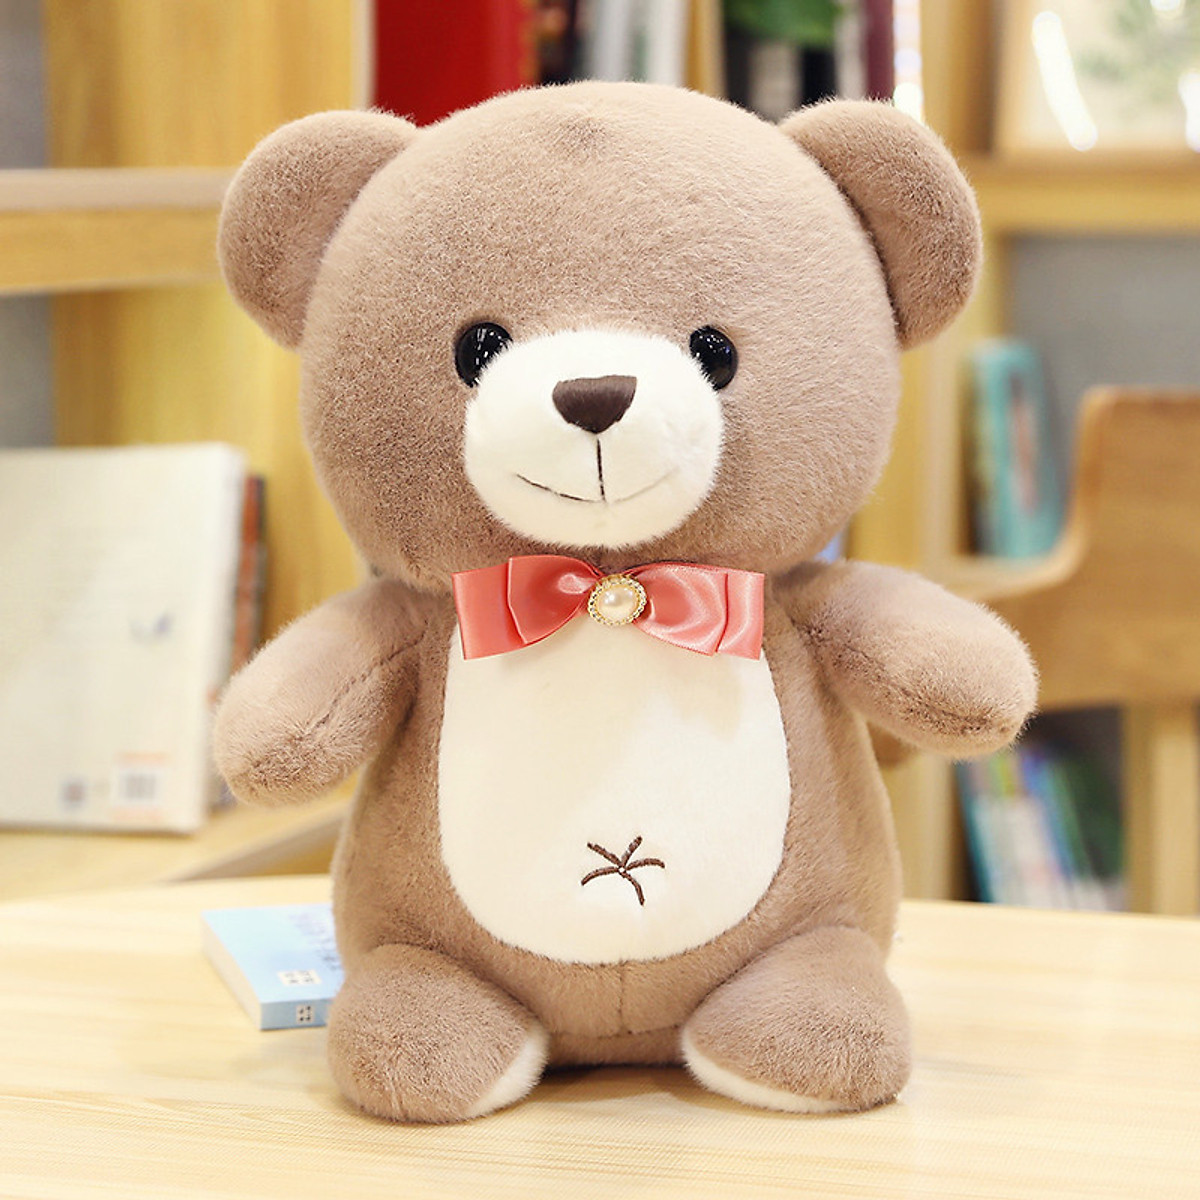 Gấu Teddy Nơ Simle Dịu Hiền, gấu bông sang trọng, đồ chơi thú bông